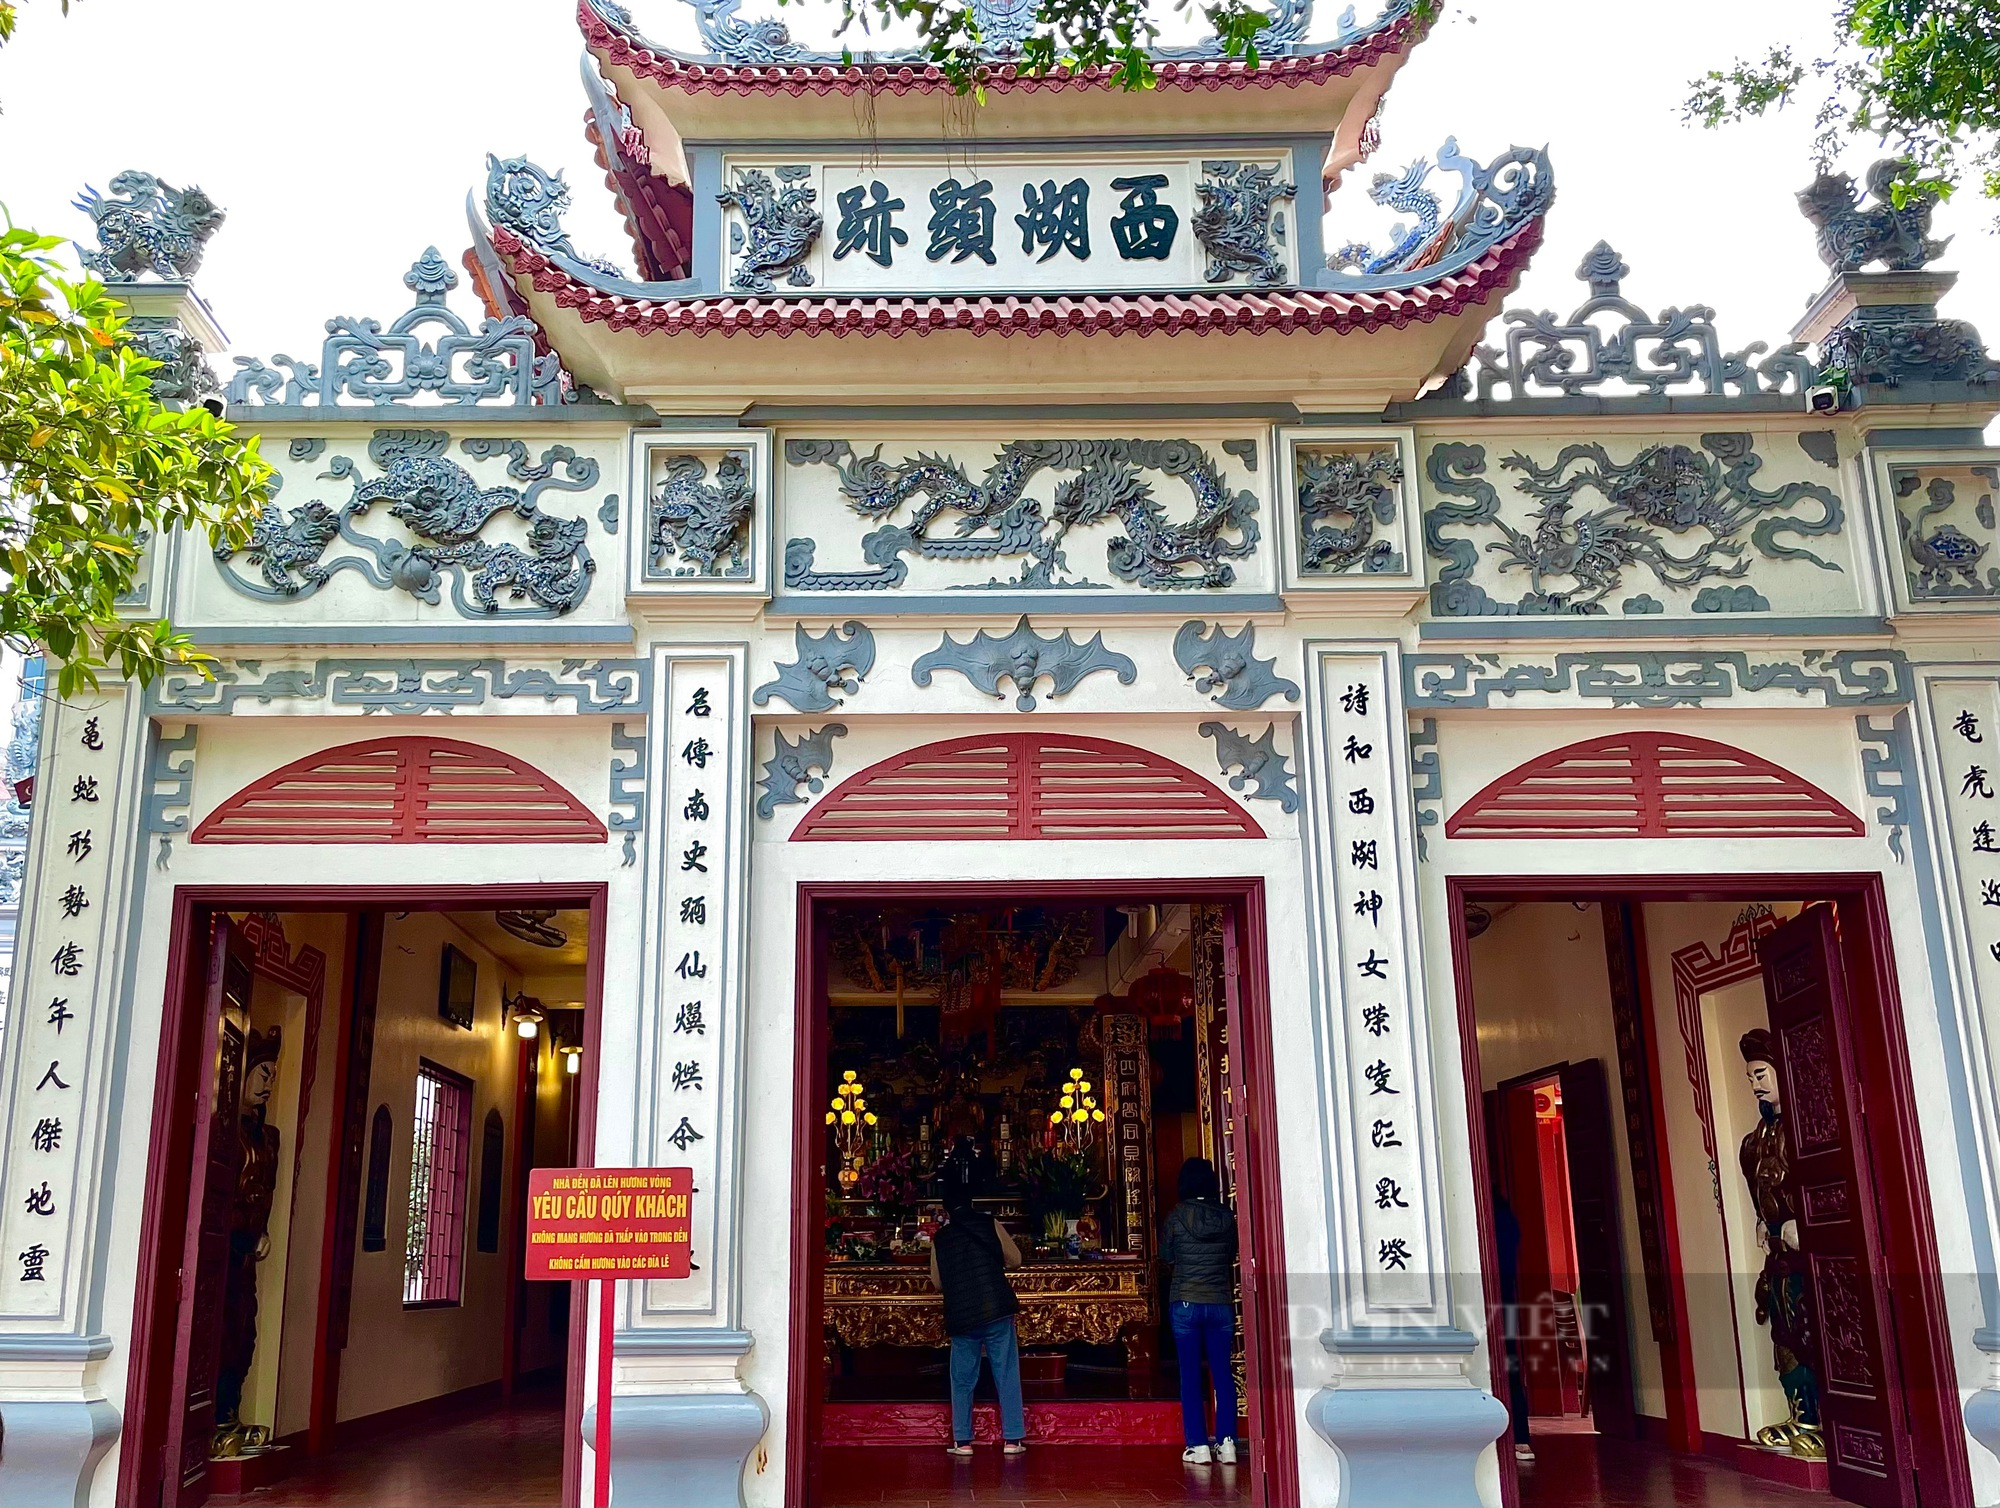 Khám phá ngôi đền cổ hơn 400 tuổi bên Hồ Tây, ngày đón cả trăm du khách ghé thăm - Ảnh 4.